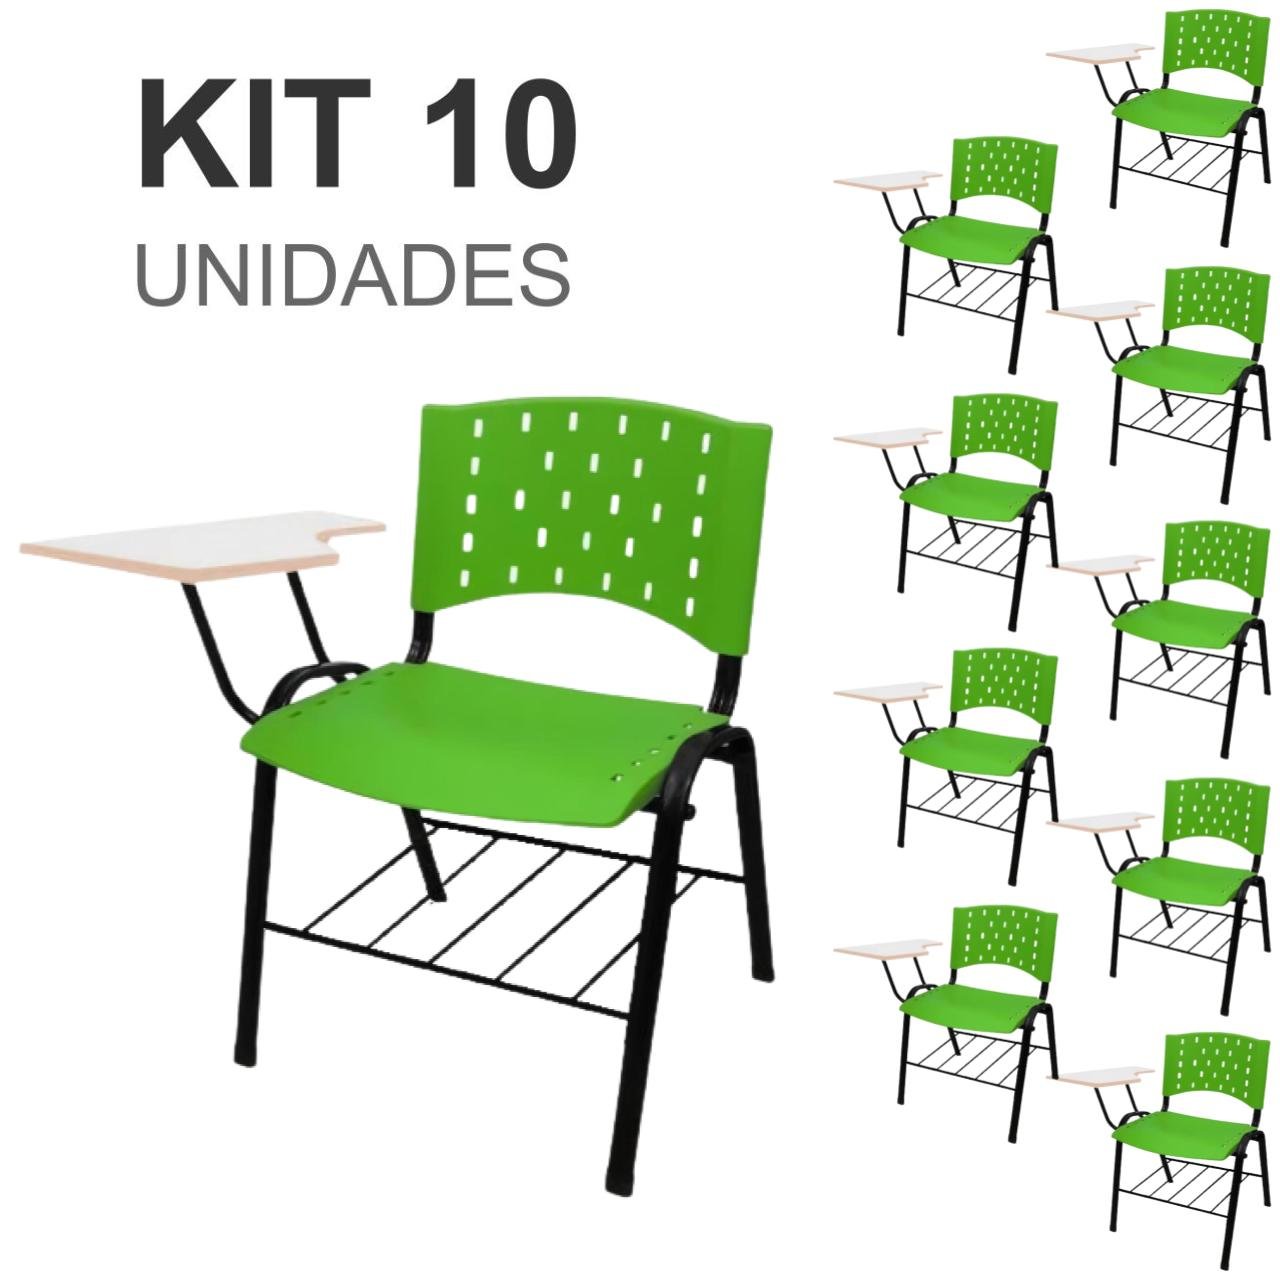 KIT 10 Cadeiras Universitárias com Prancheta e Porta Livros - Cor Verde - REAPLAST - 32027 - 1